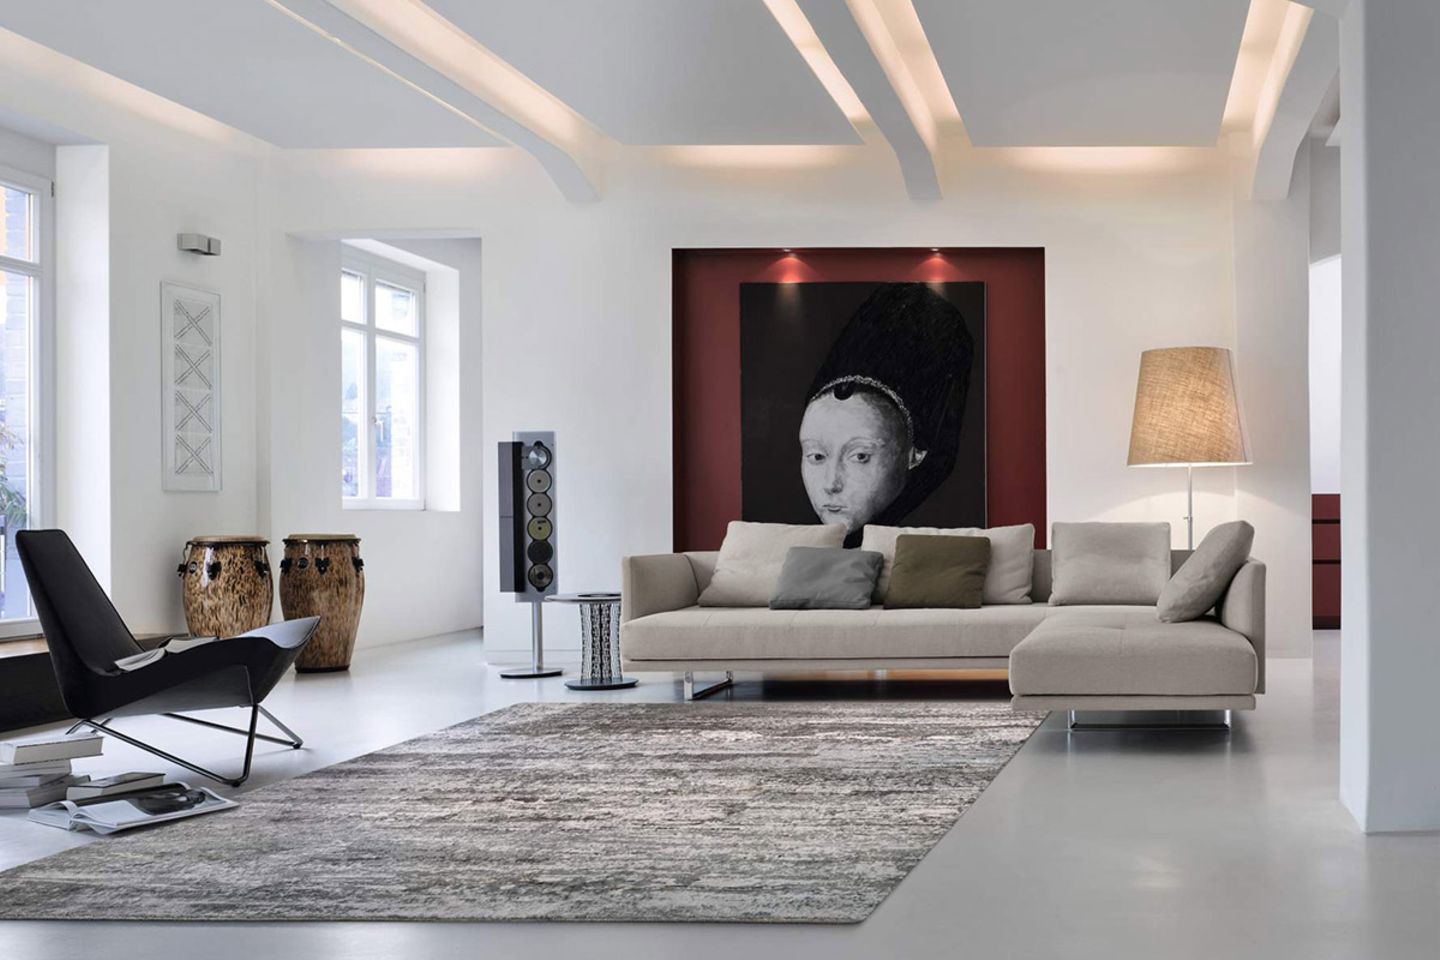 Ecksofa "Prime Time" von Walter Knoll in großem, modern eingerichtetem Wohnzimmer